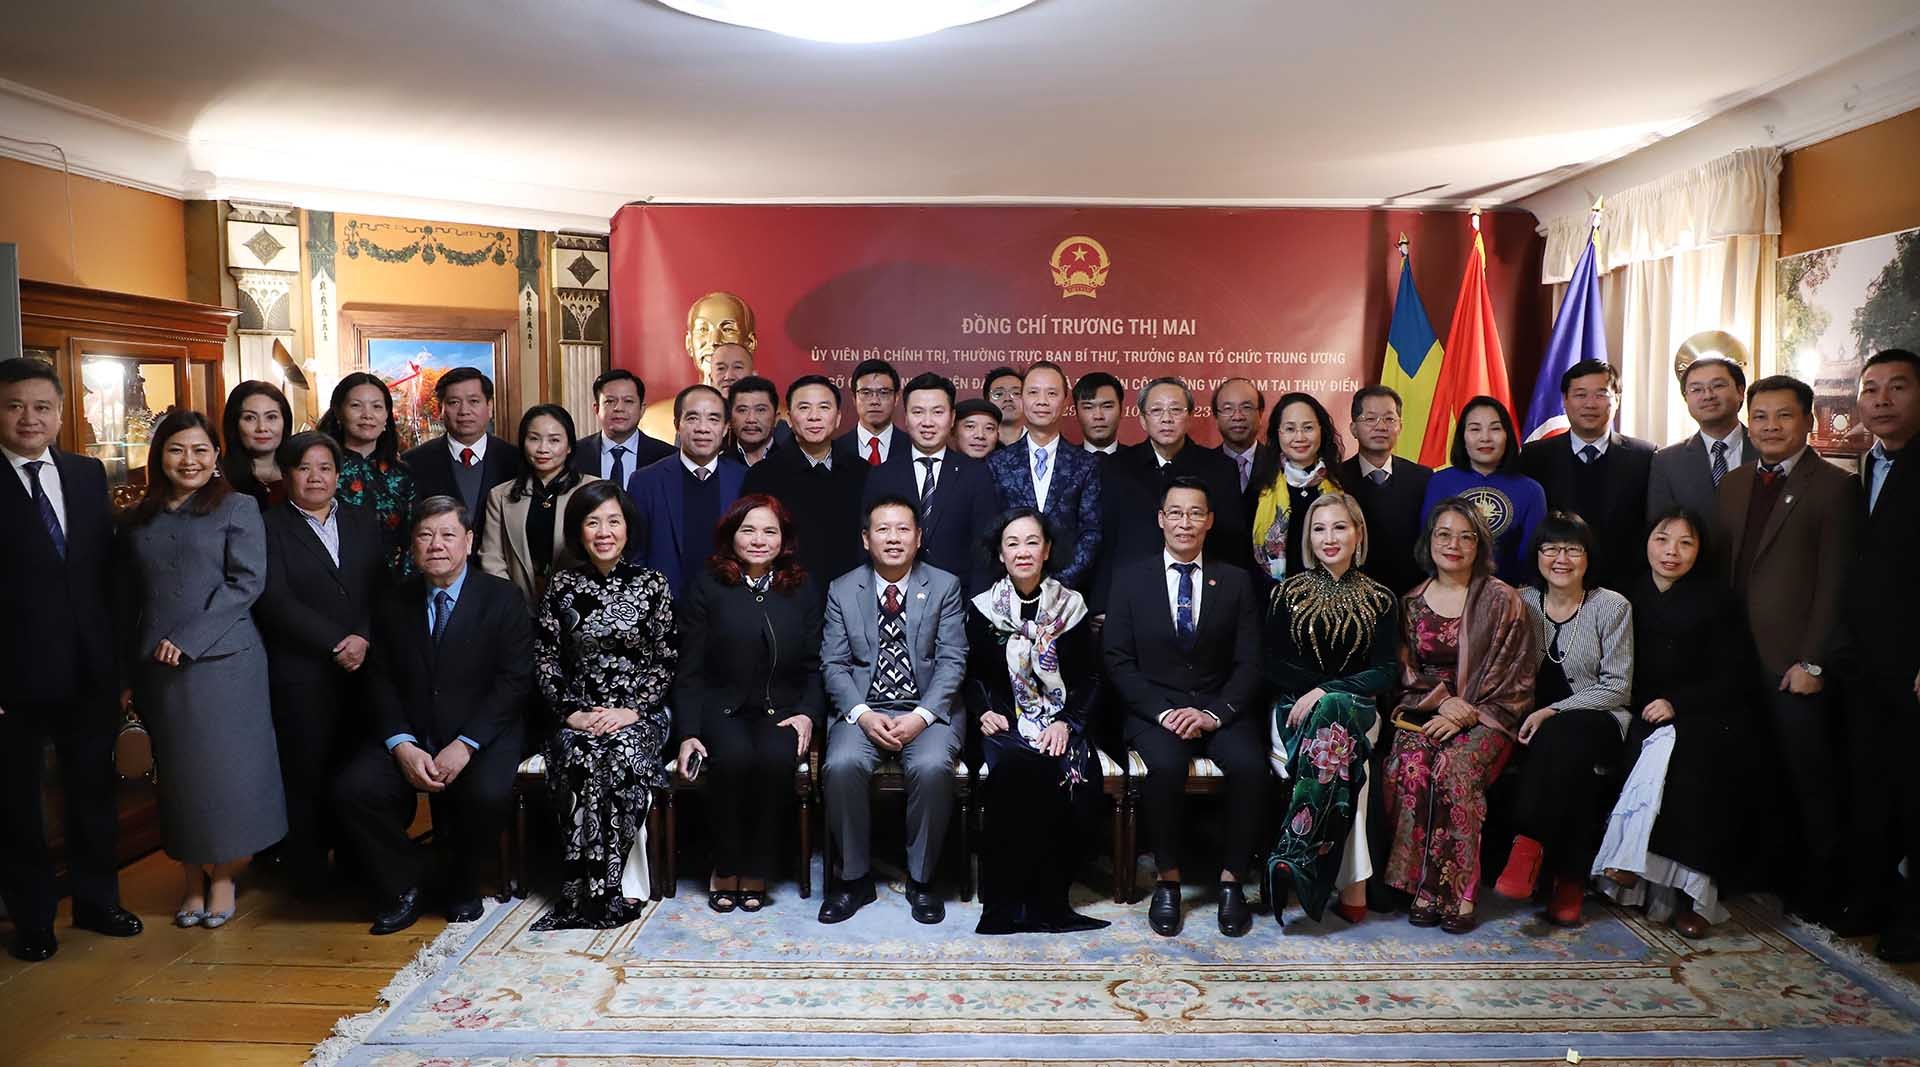 Đồng chí Trương Thị Mai chụp ảnh lưu niệm với cán bộ Đại sứ quán và đại diện cộng đồng người Việt tại Thuỵ Điển. (Nguồn: TTXVN)